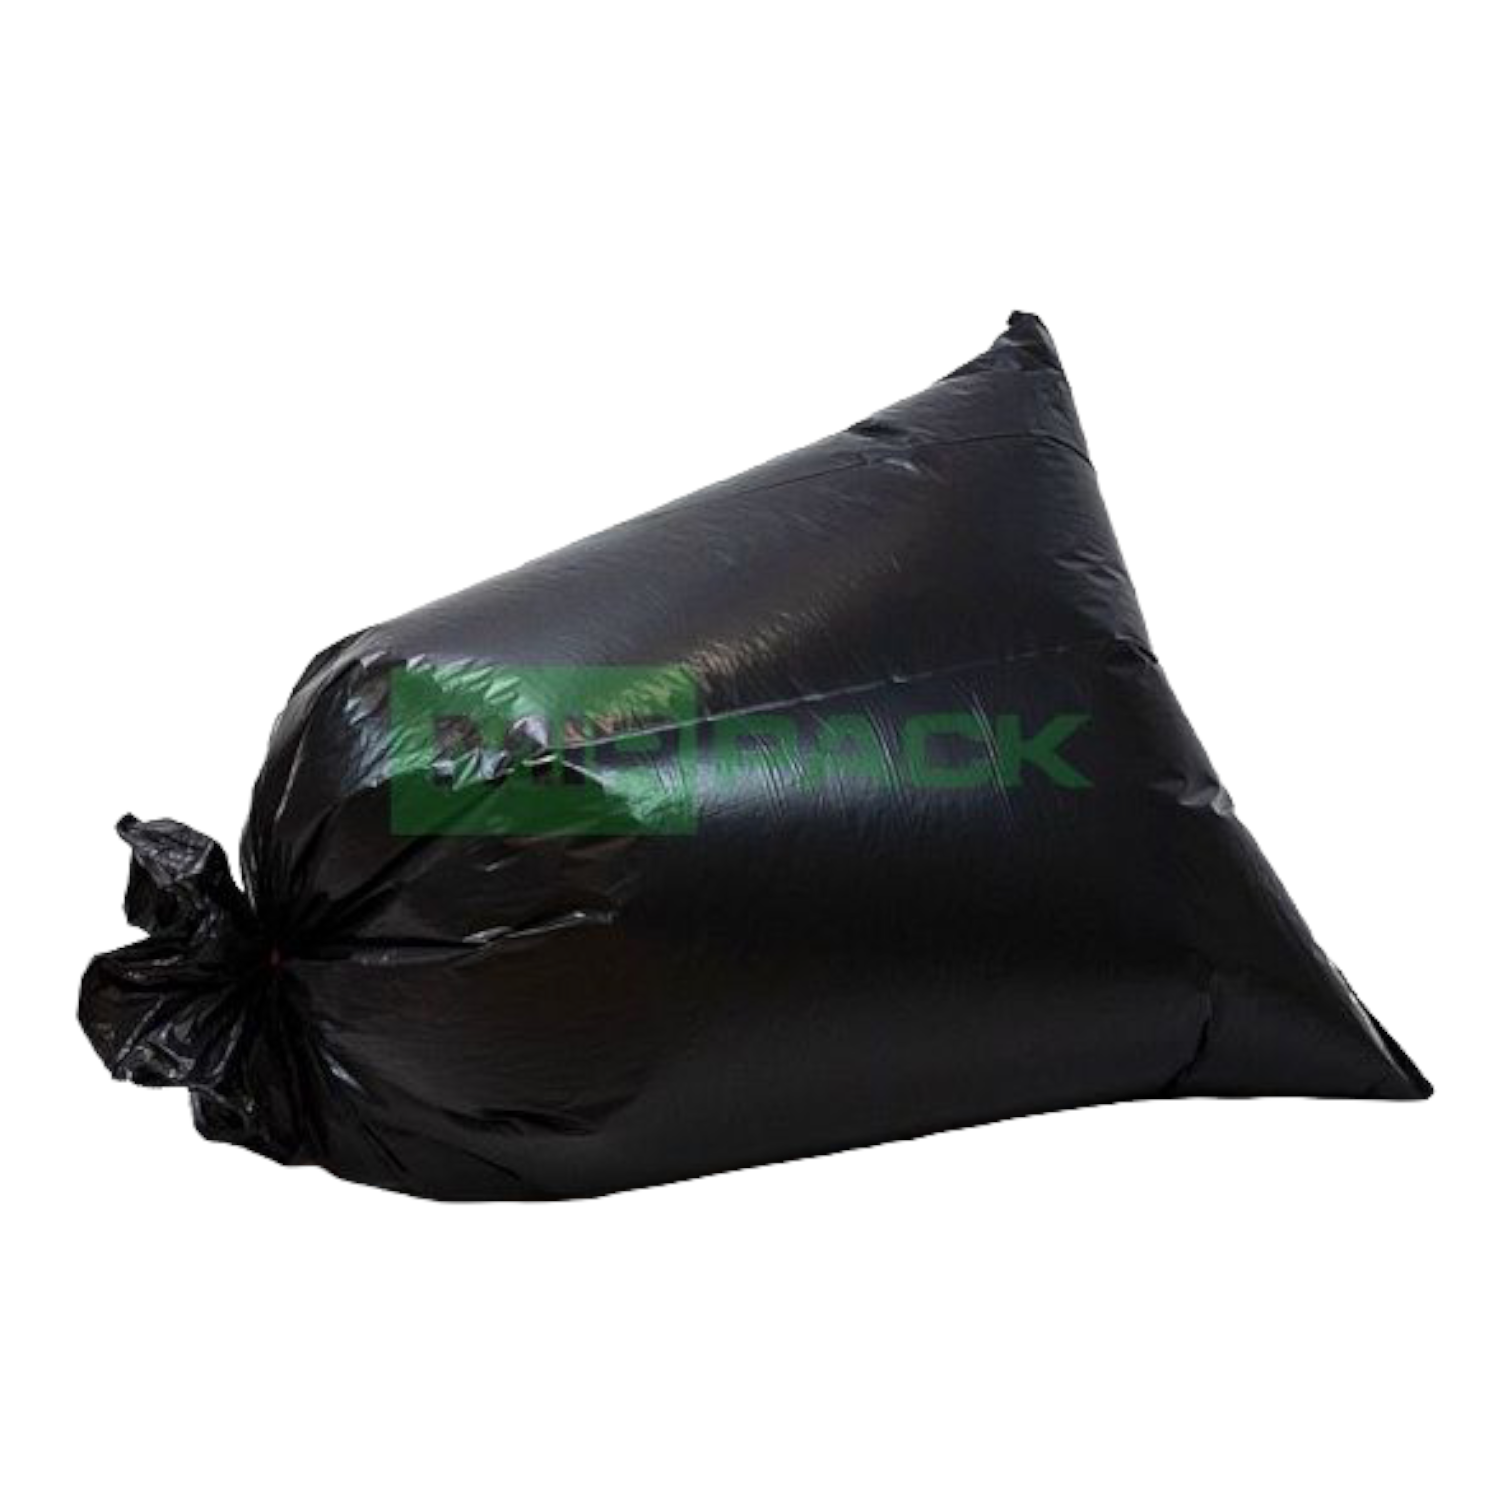 Мешки для мусора МешокRU 60 литров 60х80 см черные в рулоне - фото 13